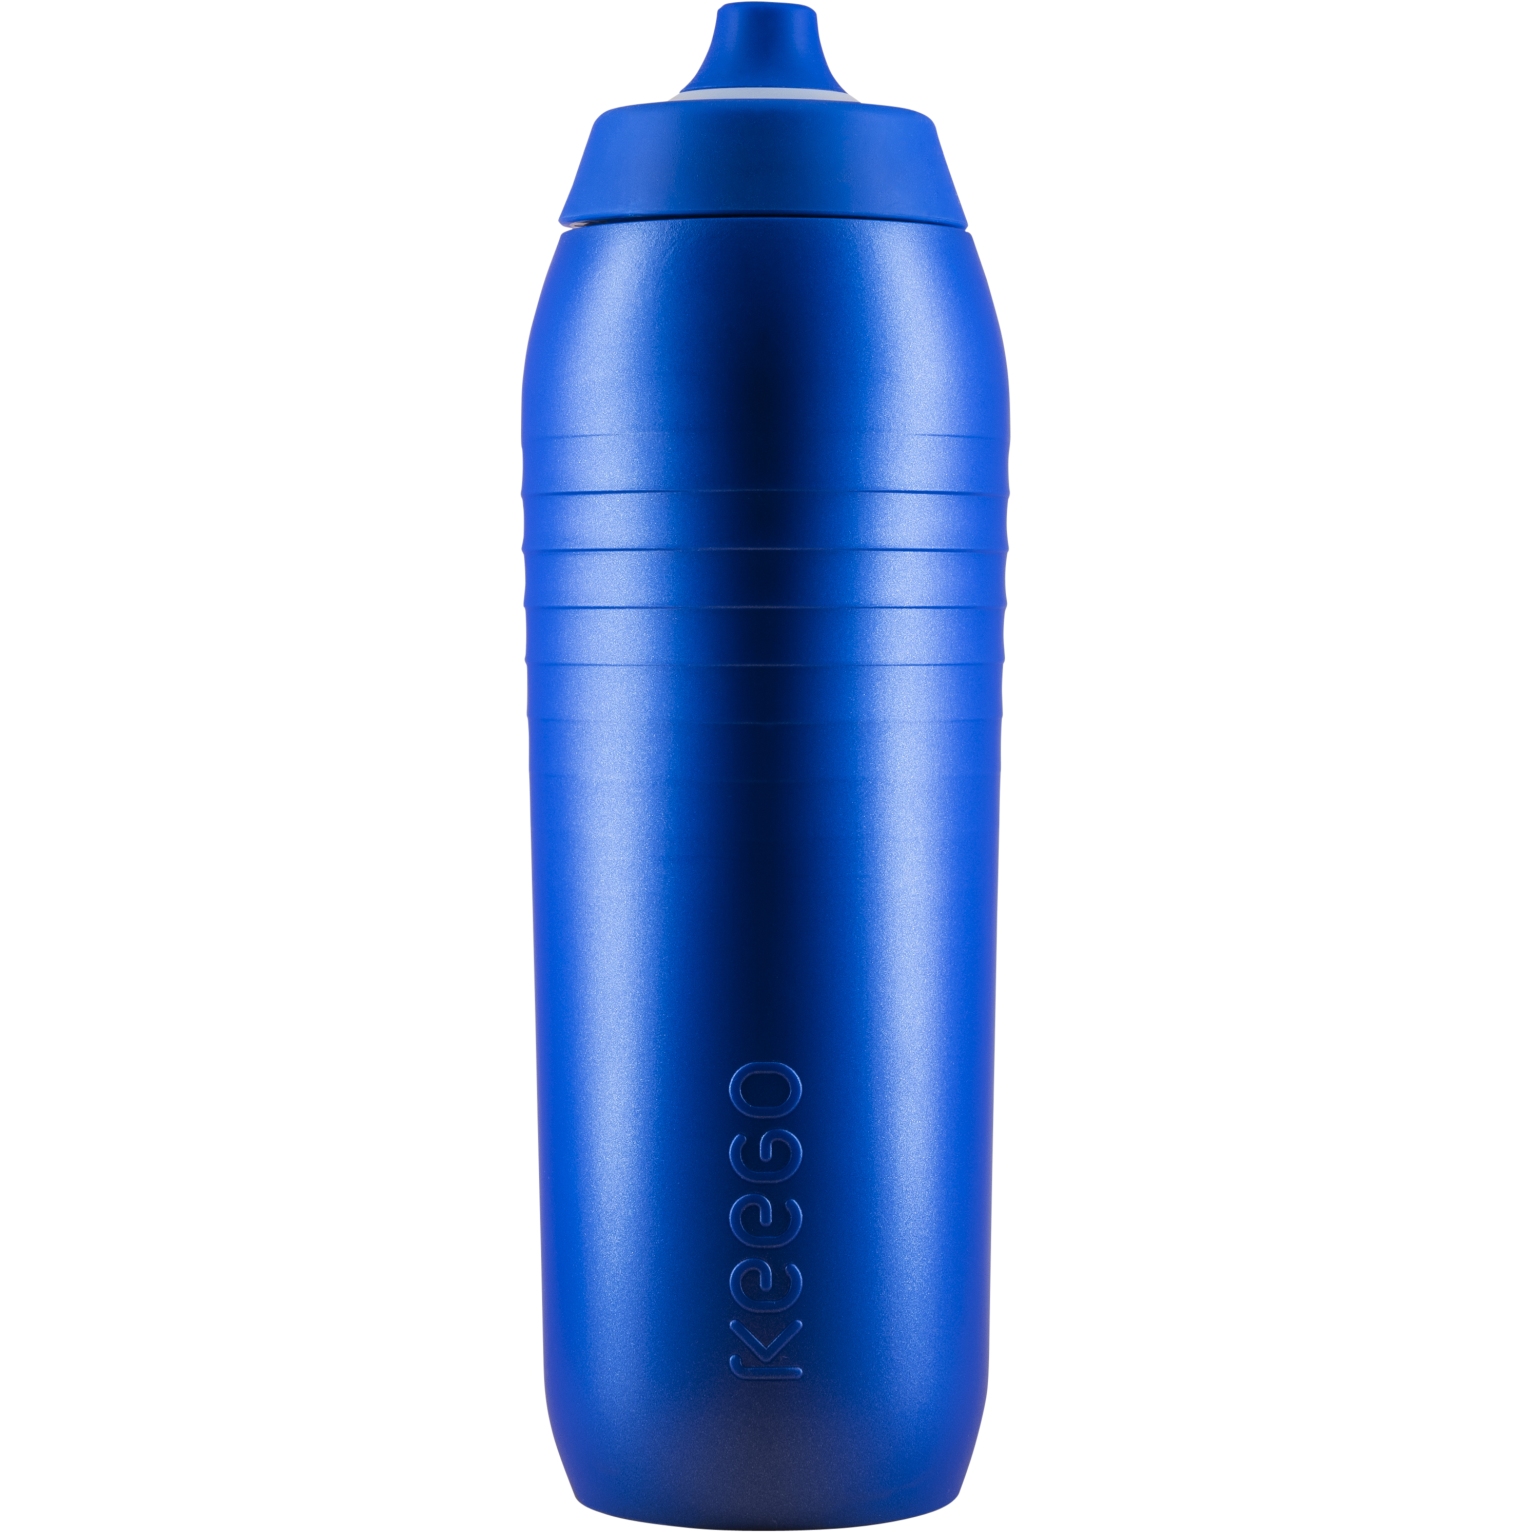 Productfoto van KEEGO Sport-Waterfles - 750ml - Electric Blue